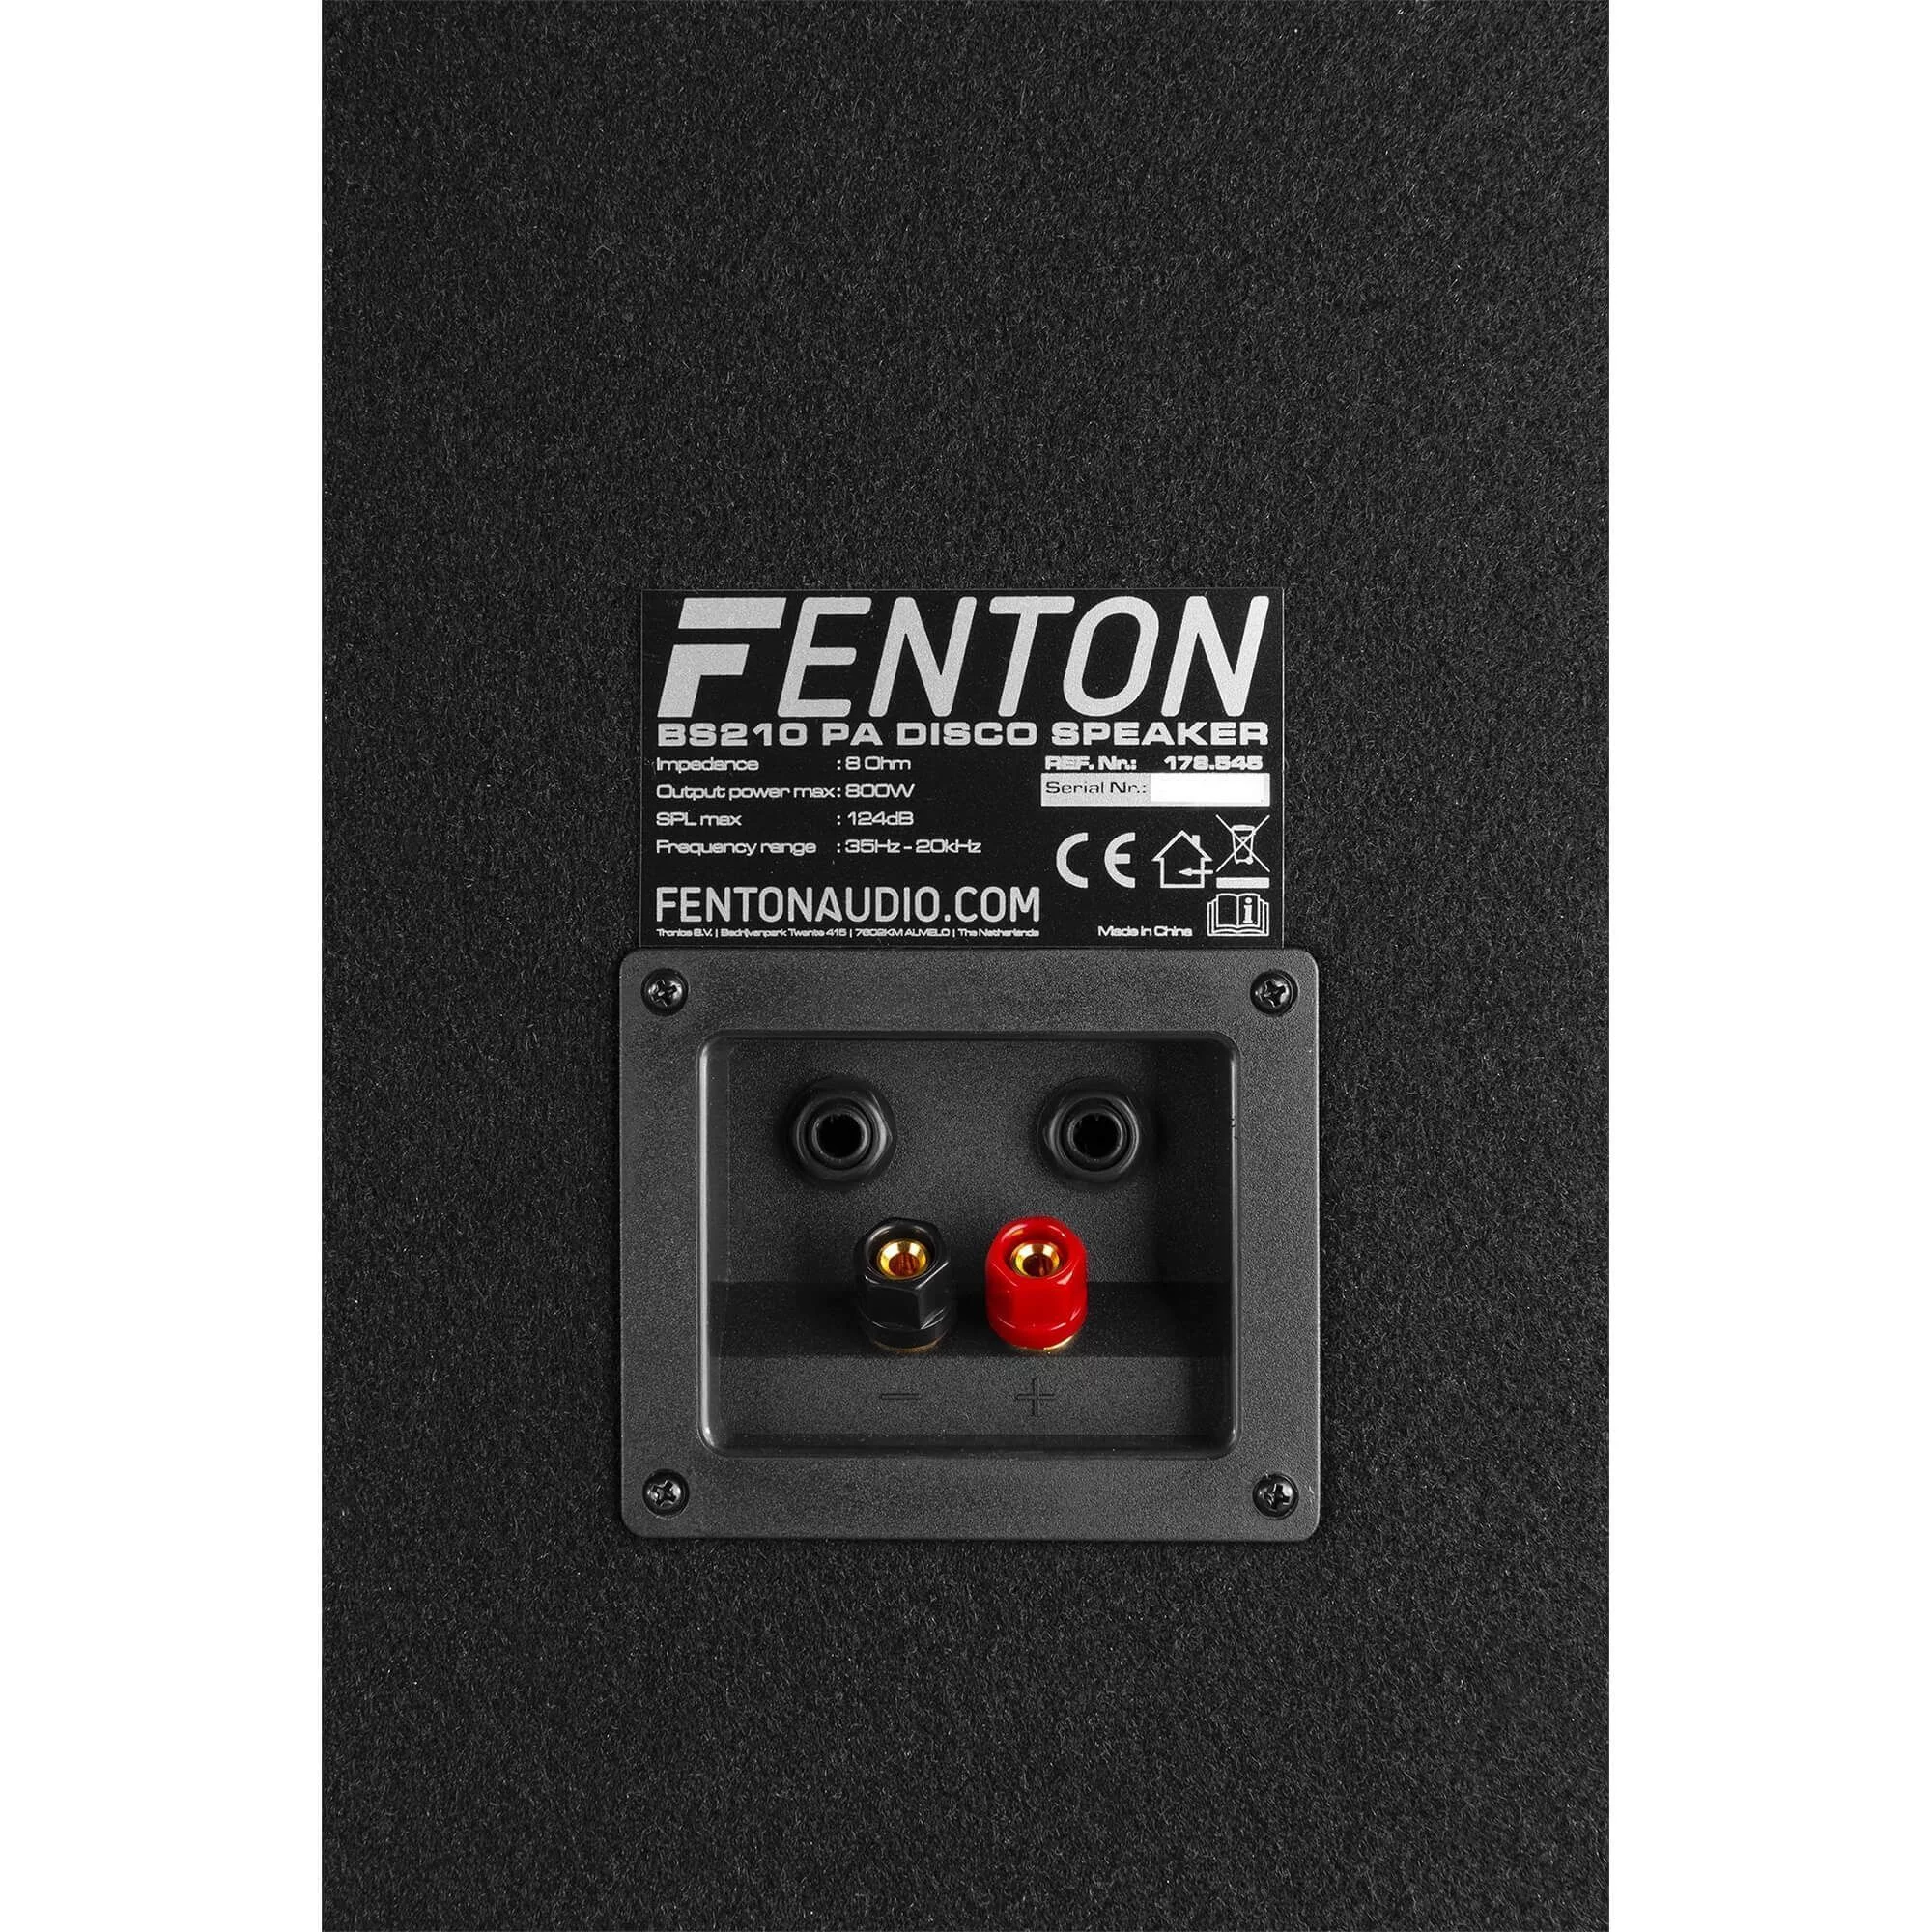 Fenton bs210 disco speaker 2x 10 met ledaposs 800w 5